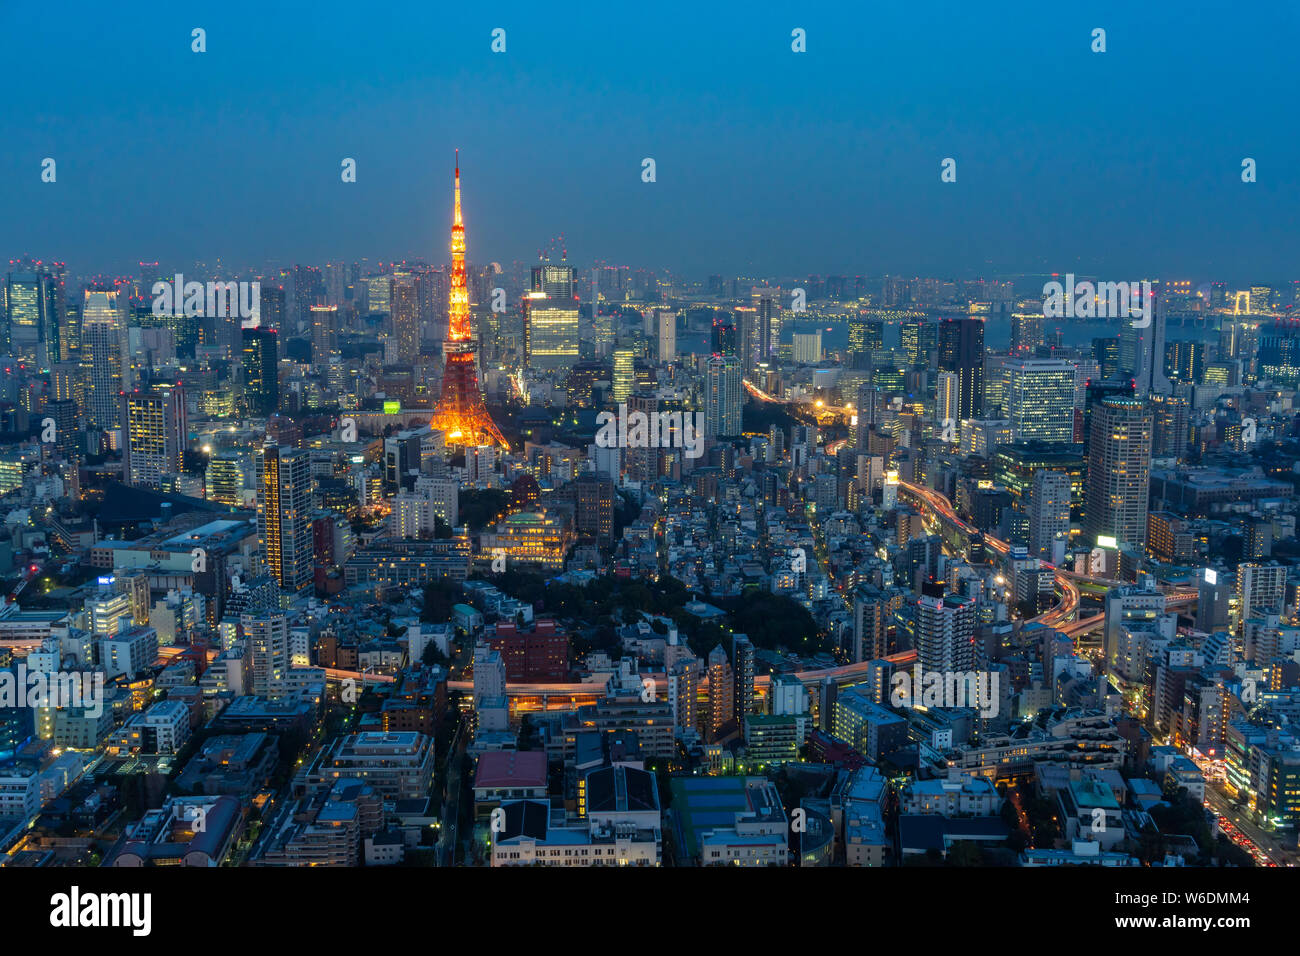 Tokyo, Giappone - Mar 26, 2019: vista dell'area del centro cittadino di Tokyo City vicino alla Torre di Tokyo, il più iconico punto di riferimento nella città. Foto Stock